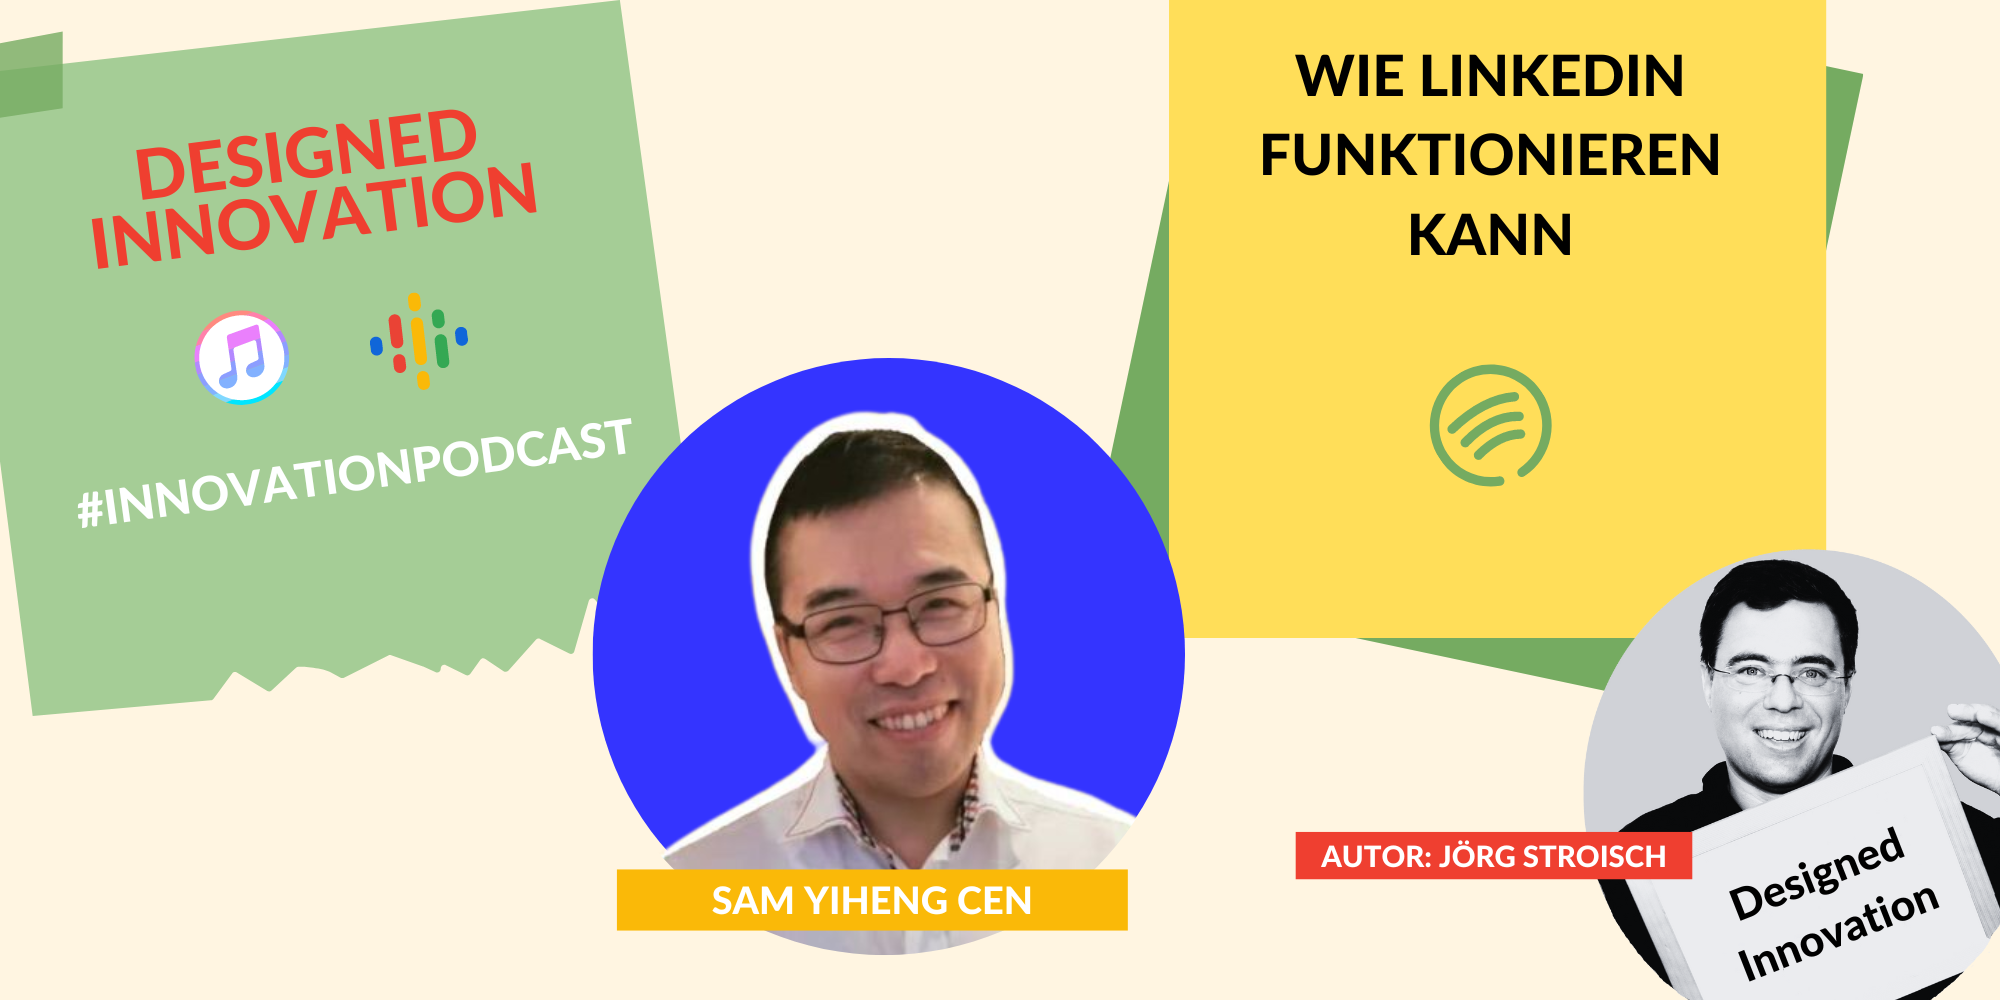 Sam erklärt in Episode des Podcasts Designed Innovation, wie er LInkedIn nutzt.